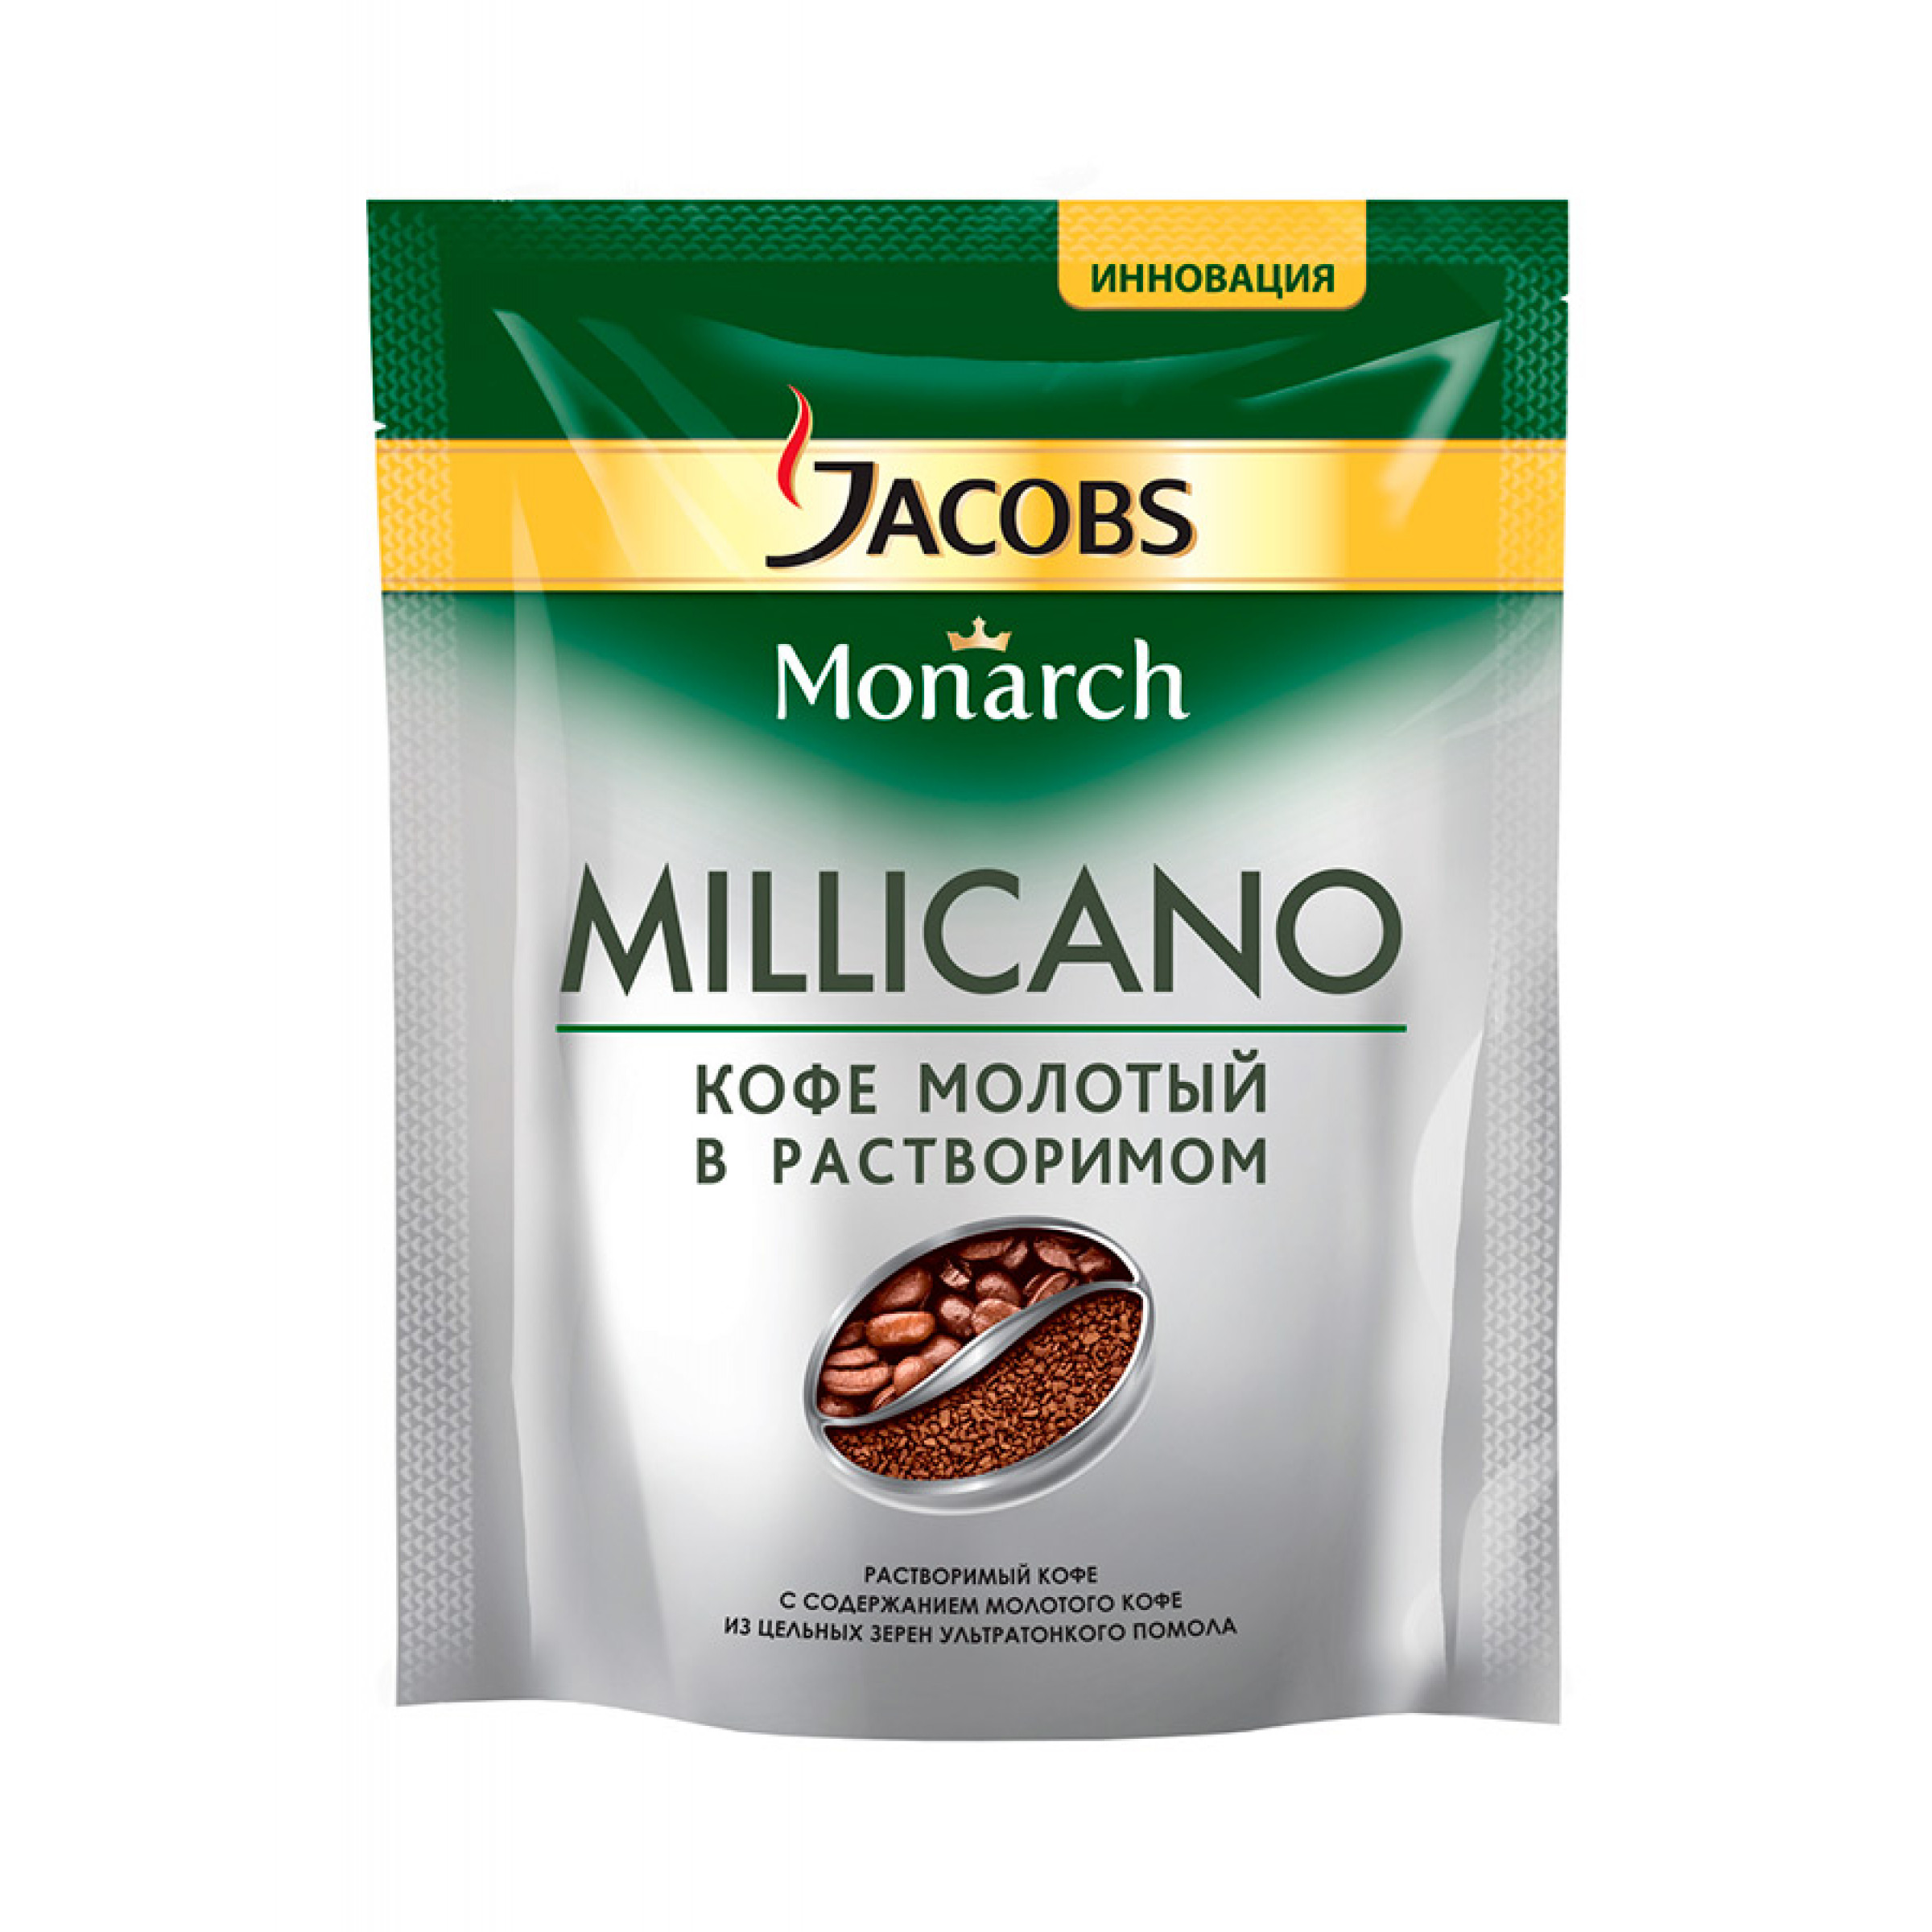 Кофе растворимый Jacobs Monarch Millicano молотый натуральный, 75 г